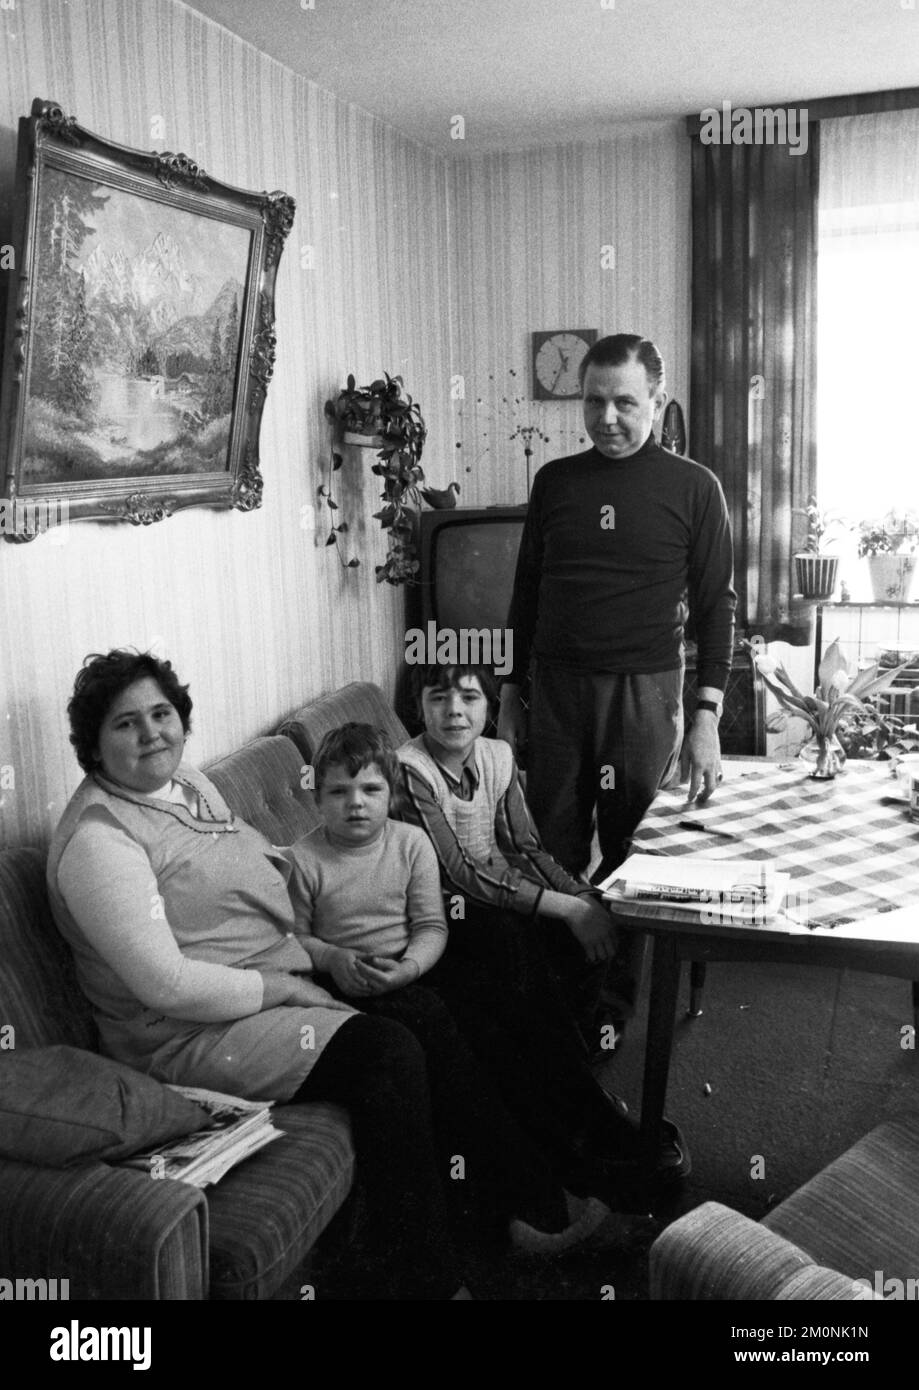 Il tasso di inflazione e l'inflazione delle 1970s famiglie della classe operaia sempre più gravate, come quella fotografata il 29 gennaio 1974 a Dortmund, Foto Stock